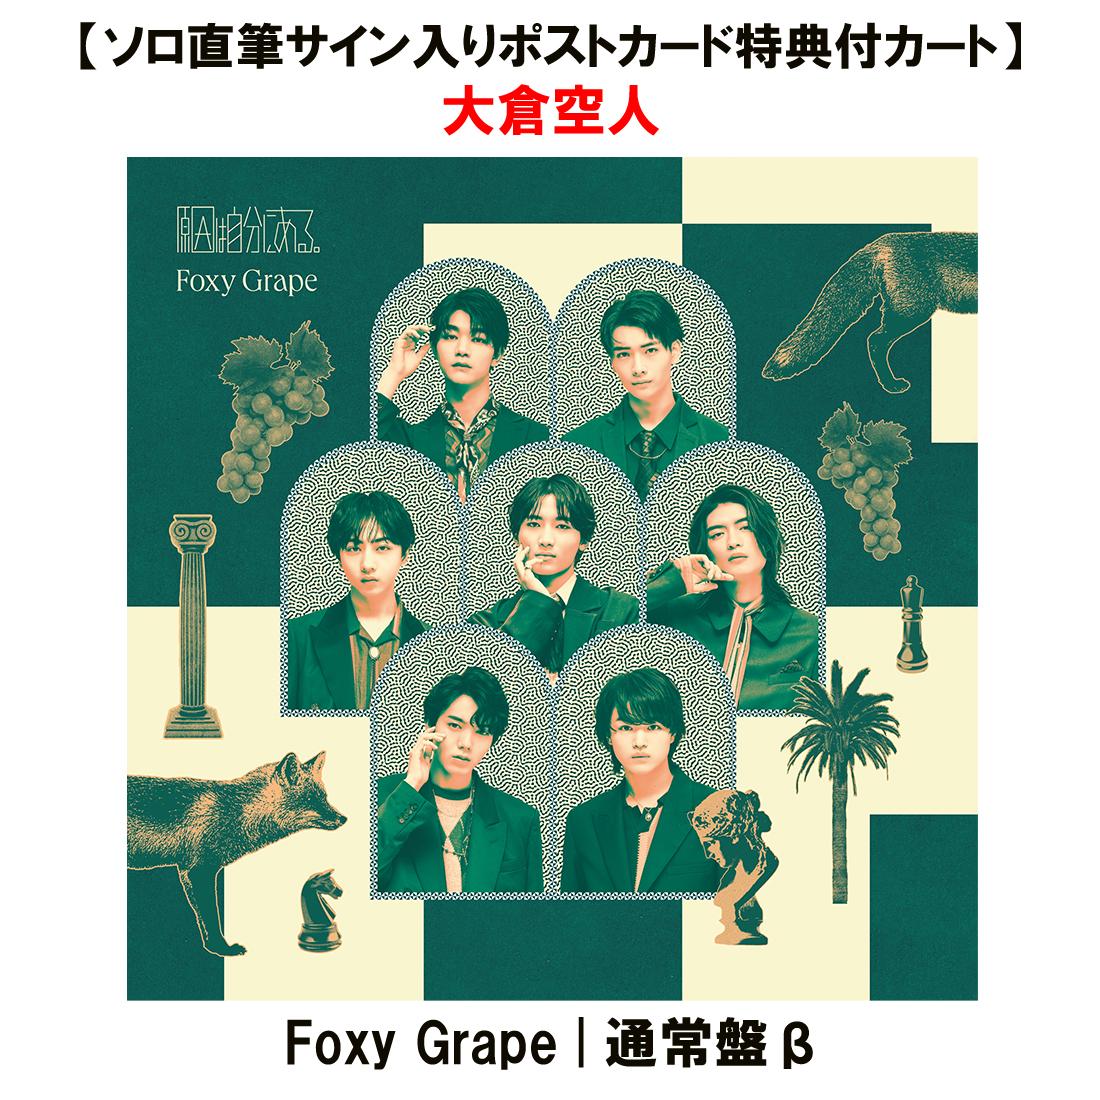 【ソロ直筆サイン入りポストカード特典付カート】Foxy Grape | 通常盤β (大倉空人)